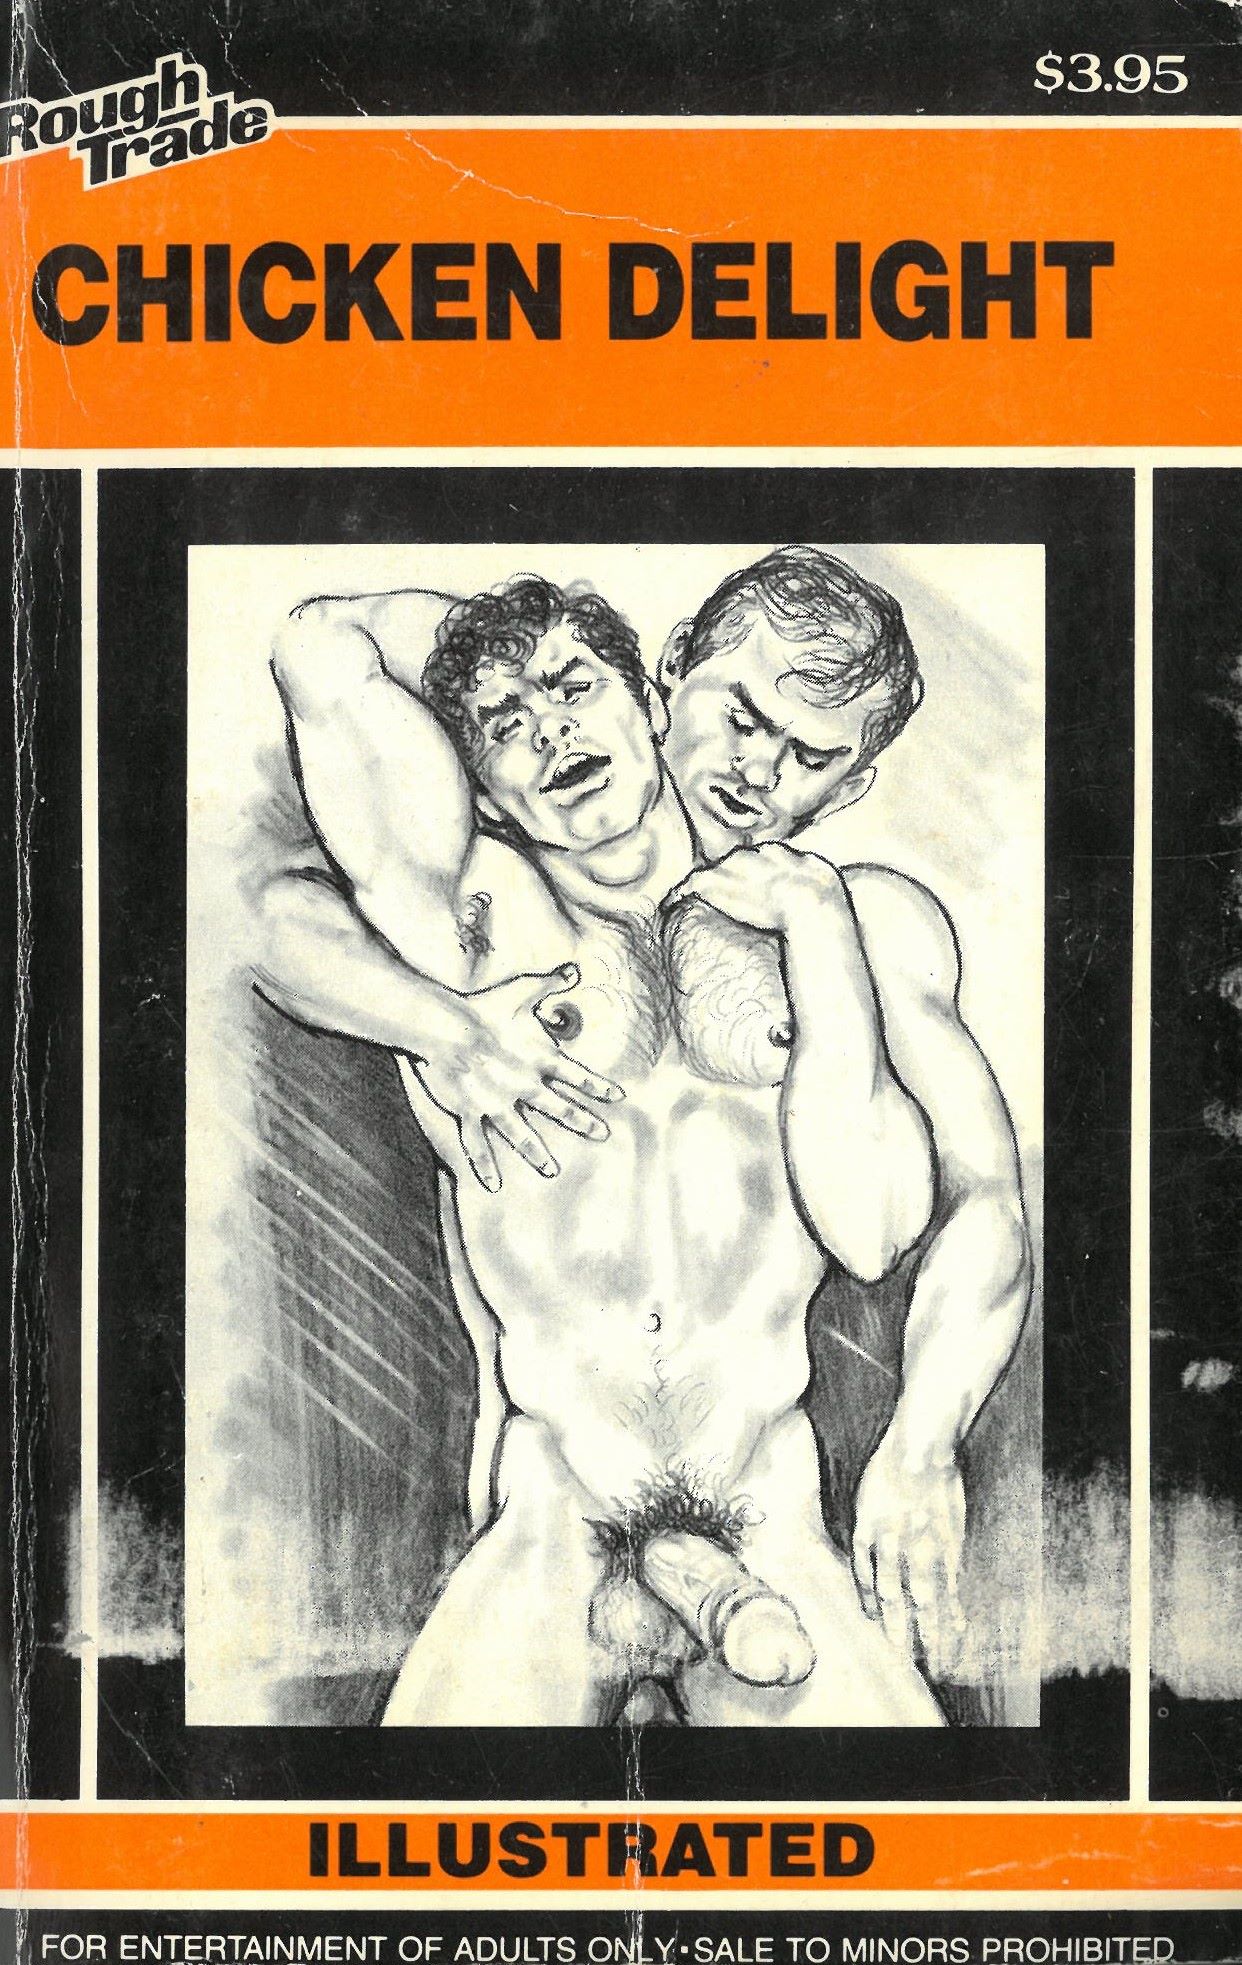  Chicken Delight, Star Distributors, vintage gay sex porn book, Bijouworld.com